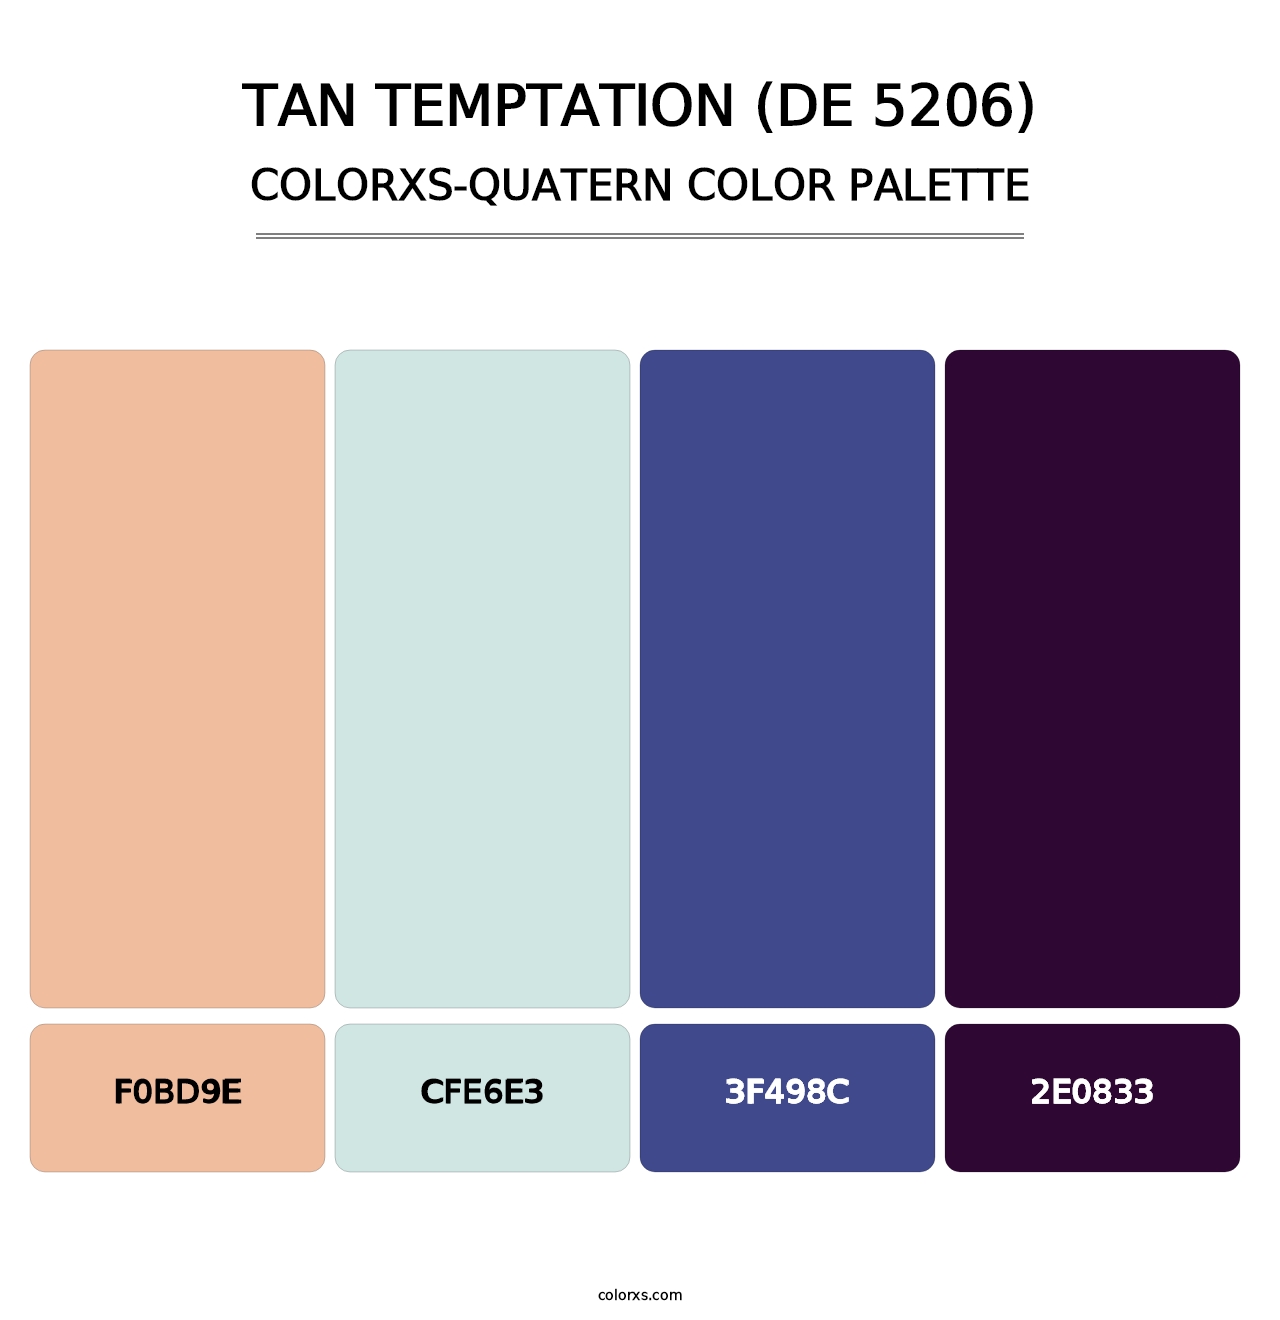 Tan Temptation (DE 5206) - Colorxs Quatern Palette